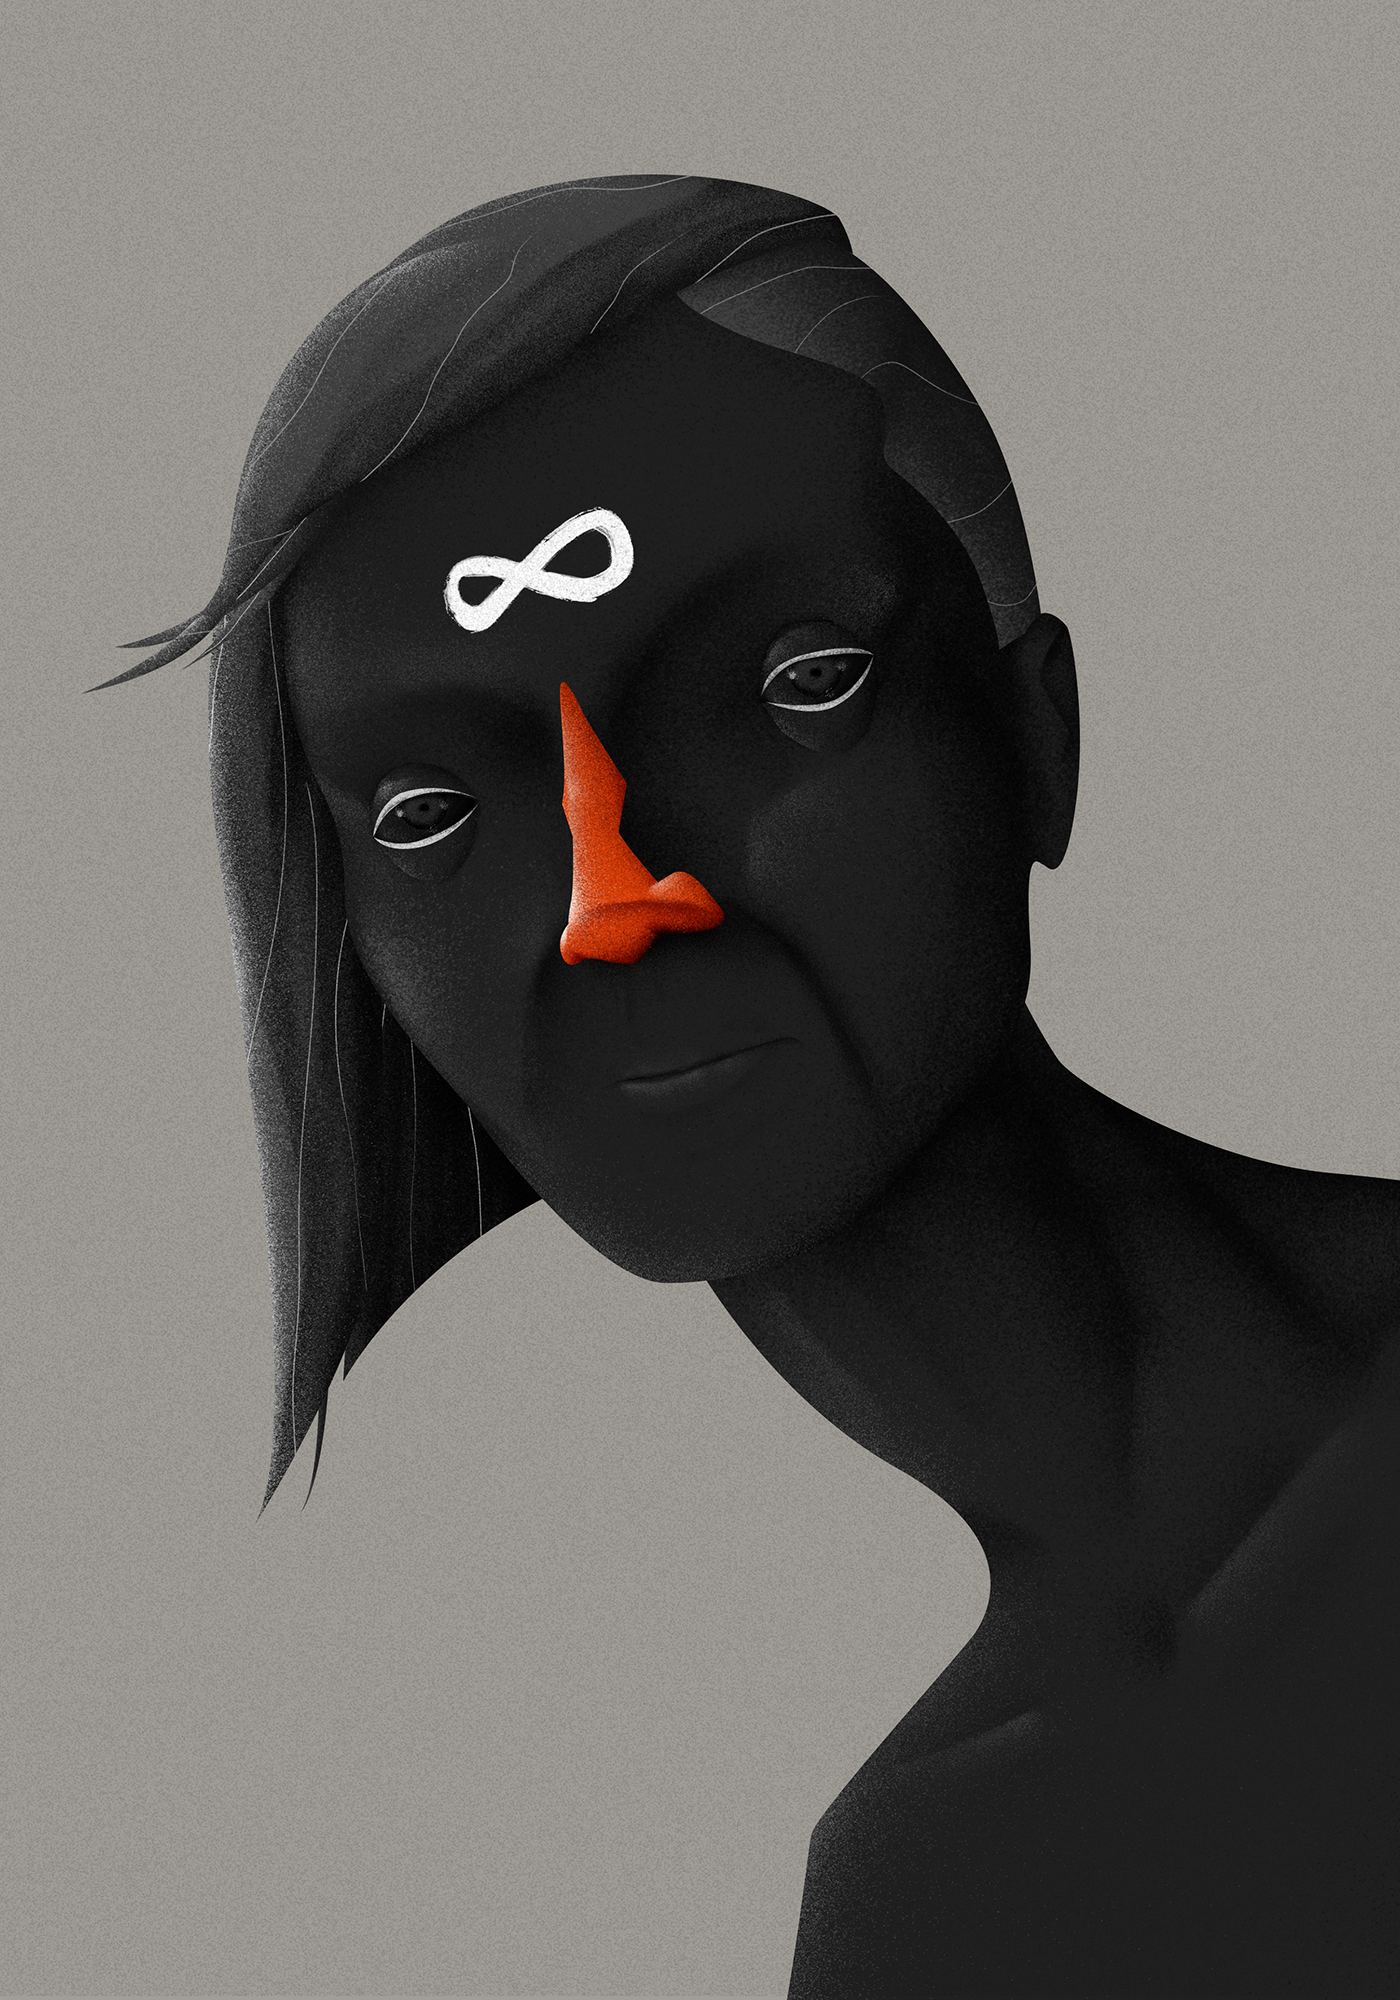 galeribu Exhibition  digital illustration wacom photoshop adobe black emptyness nose airbrush